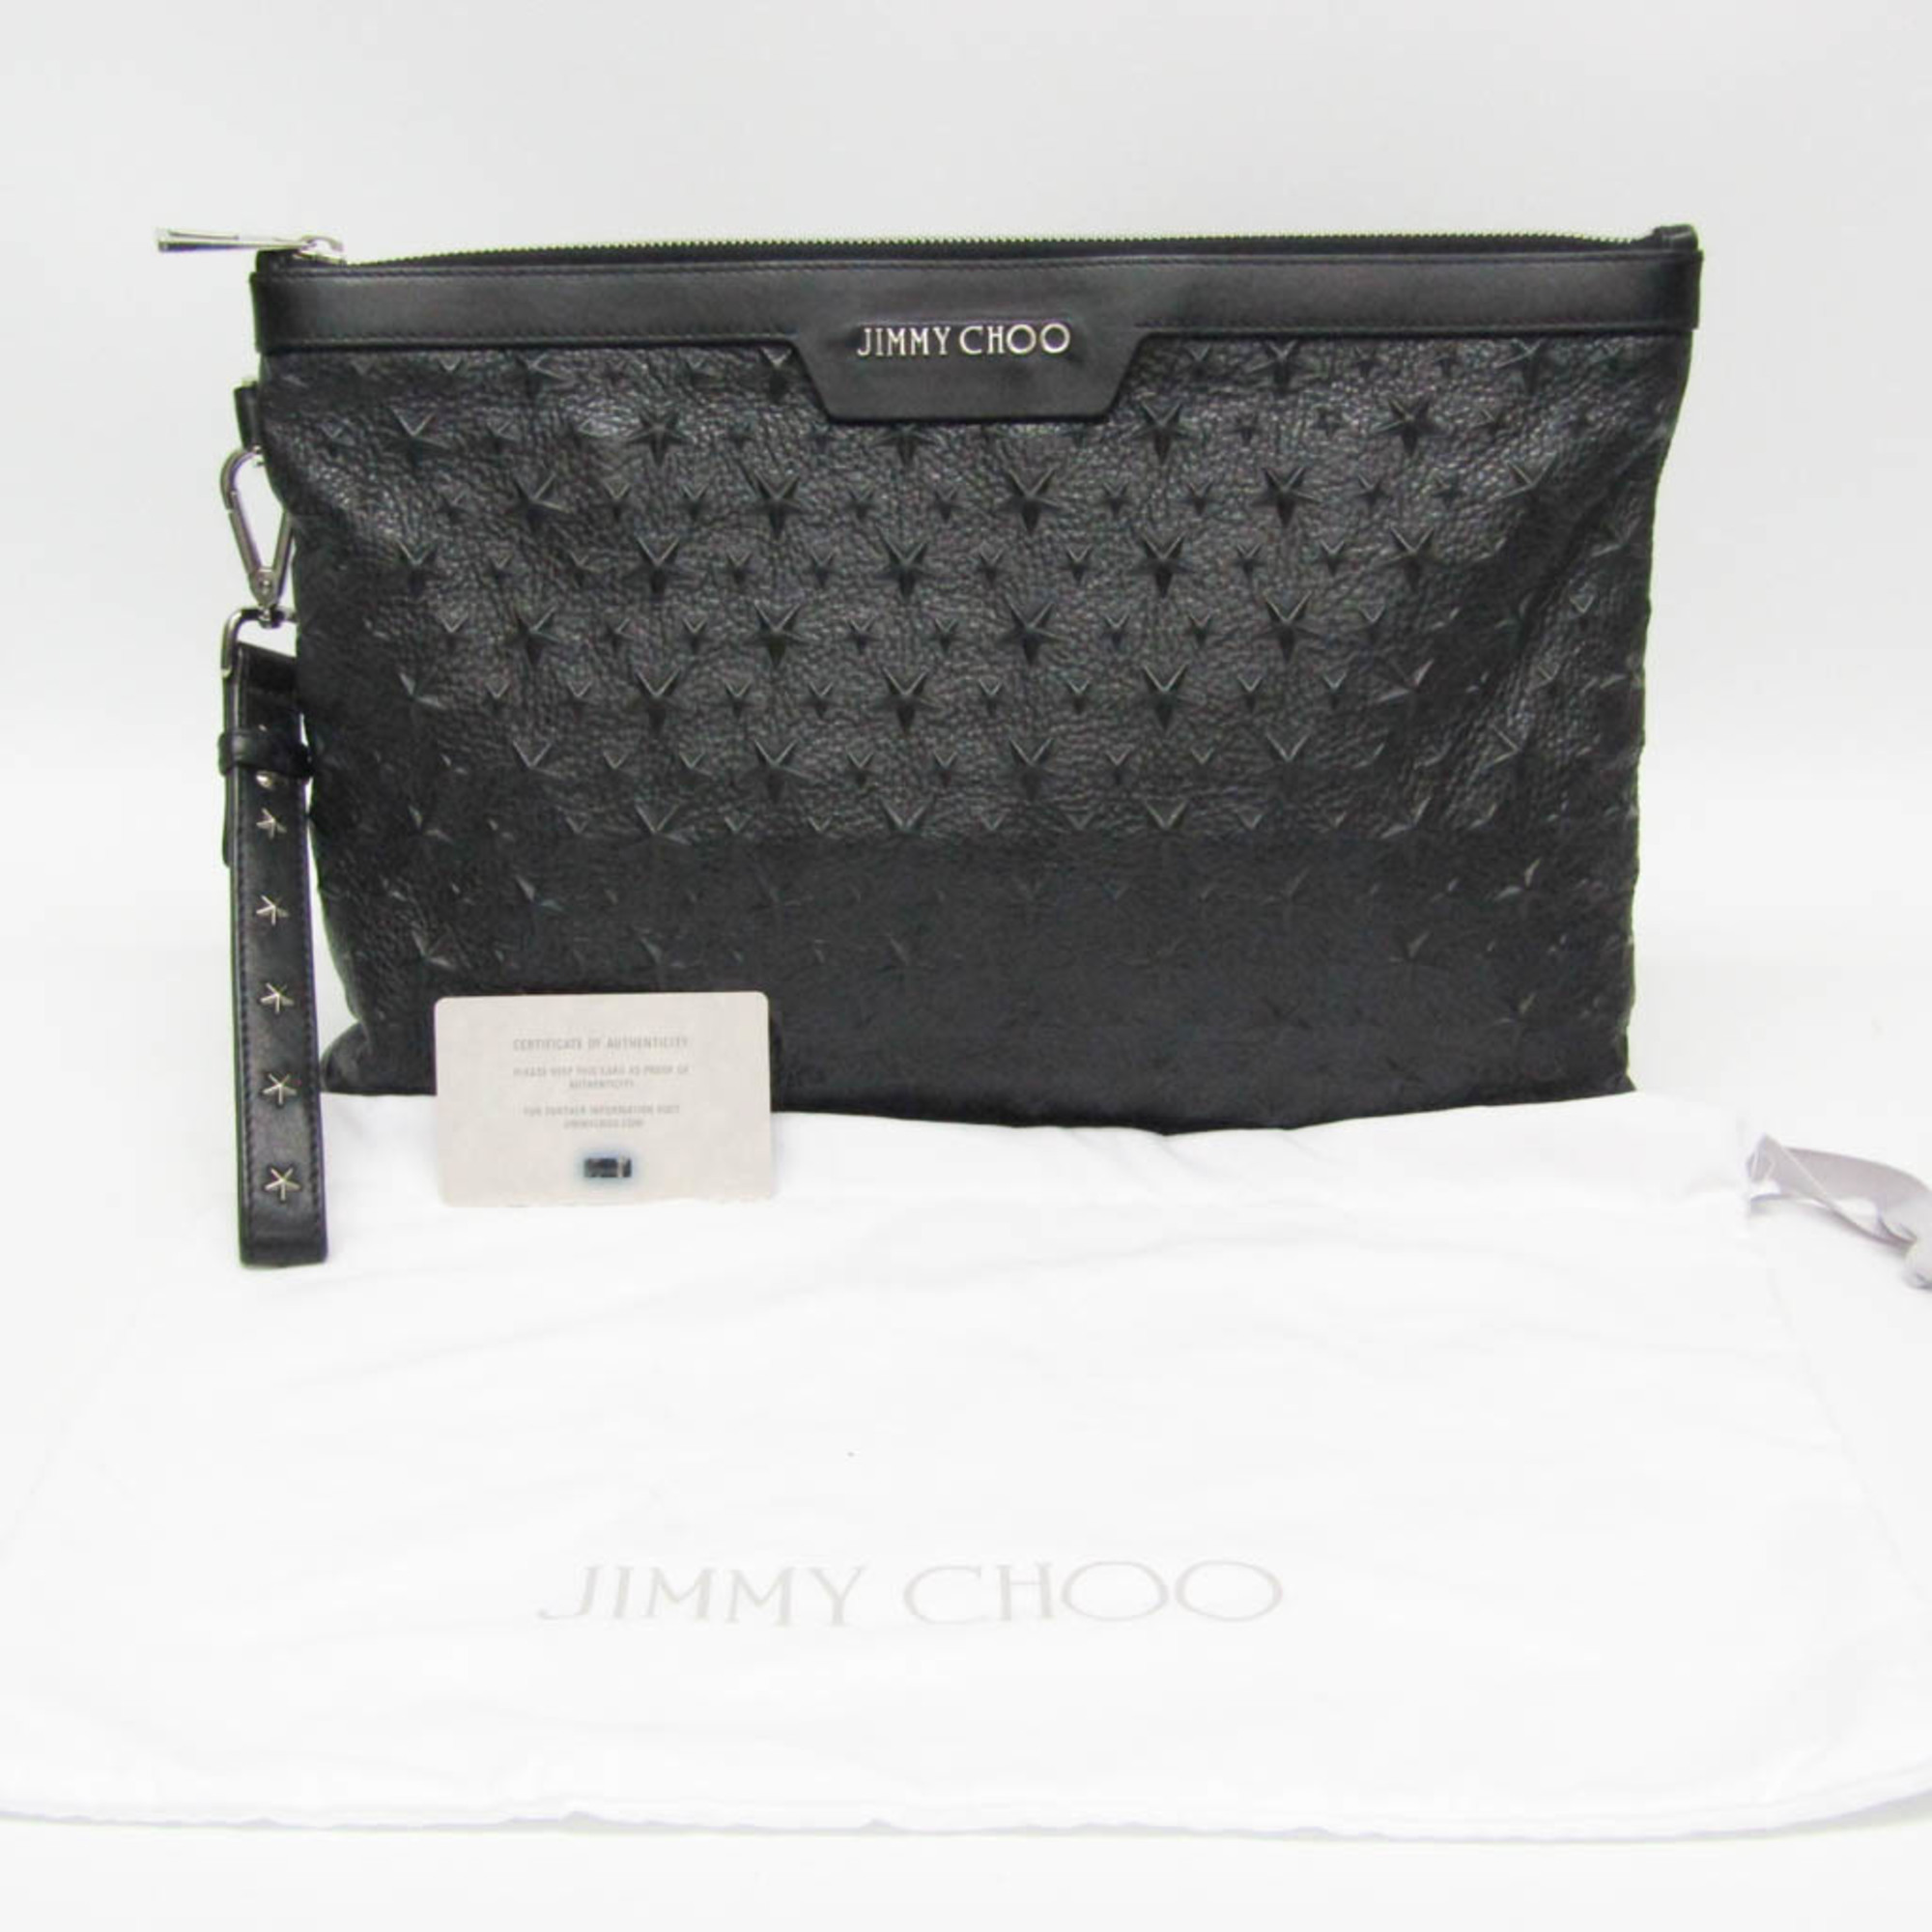 Jimmy Choo DEREK Men,Women Leather Clutch Bag Black